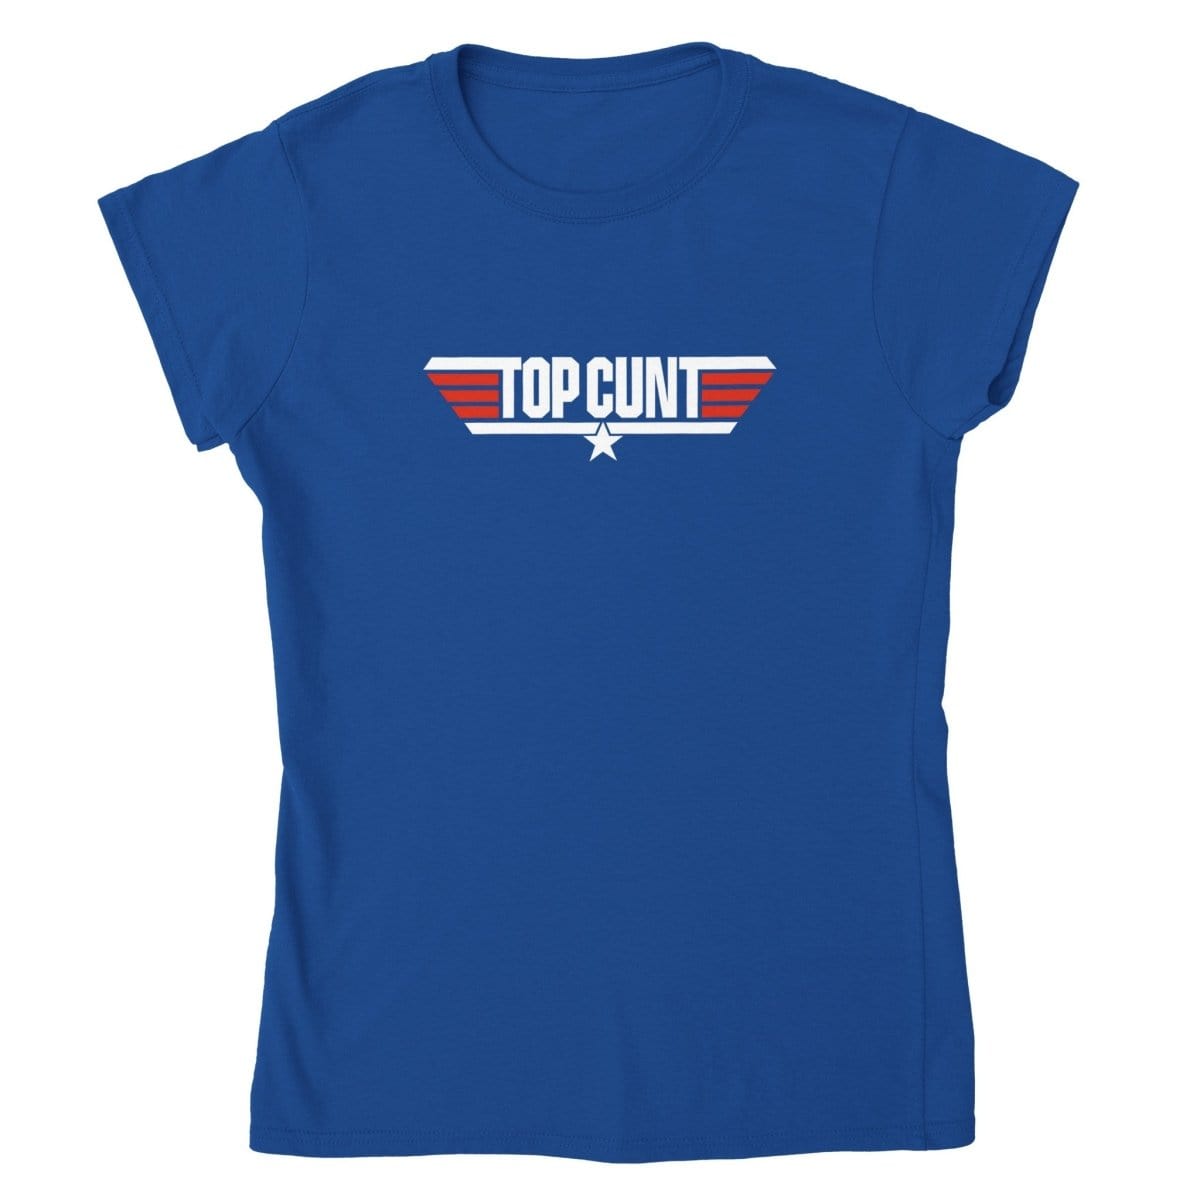 Top Cunt T-Shirt Australia Online Color Royal / Womens / S